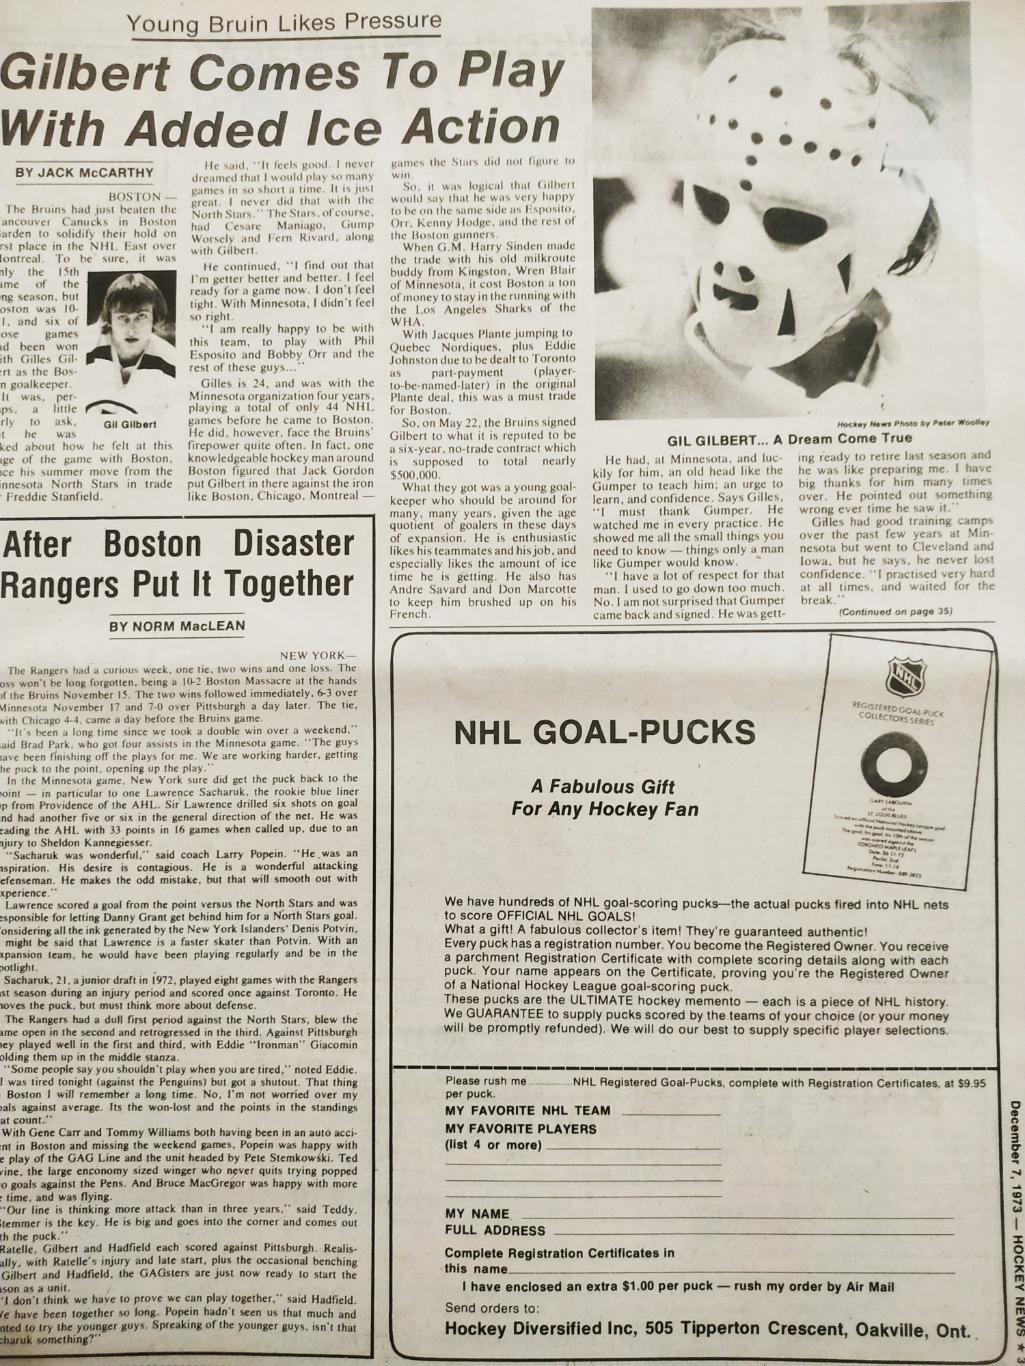 ХОККЕЙ ЖУРНАЛ ЕЖЕНЕДЕЛЬНИК НХЛ НОВОСТИ ХОККЕЯ DEC.7 1973 NHL THE HOCKEY NEWS 2